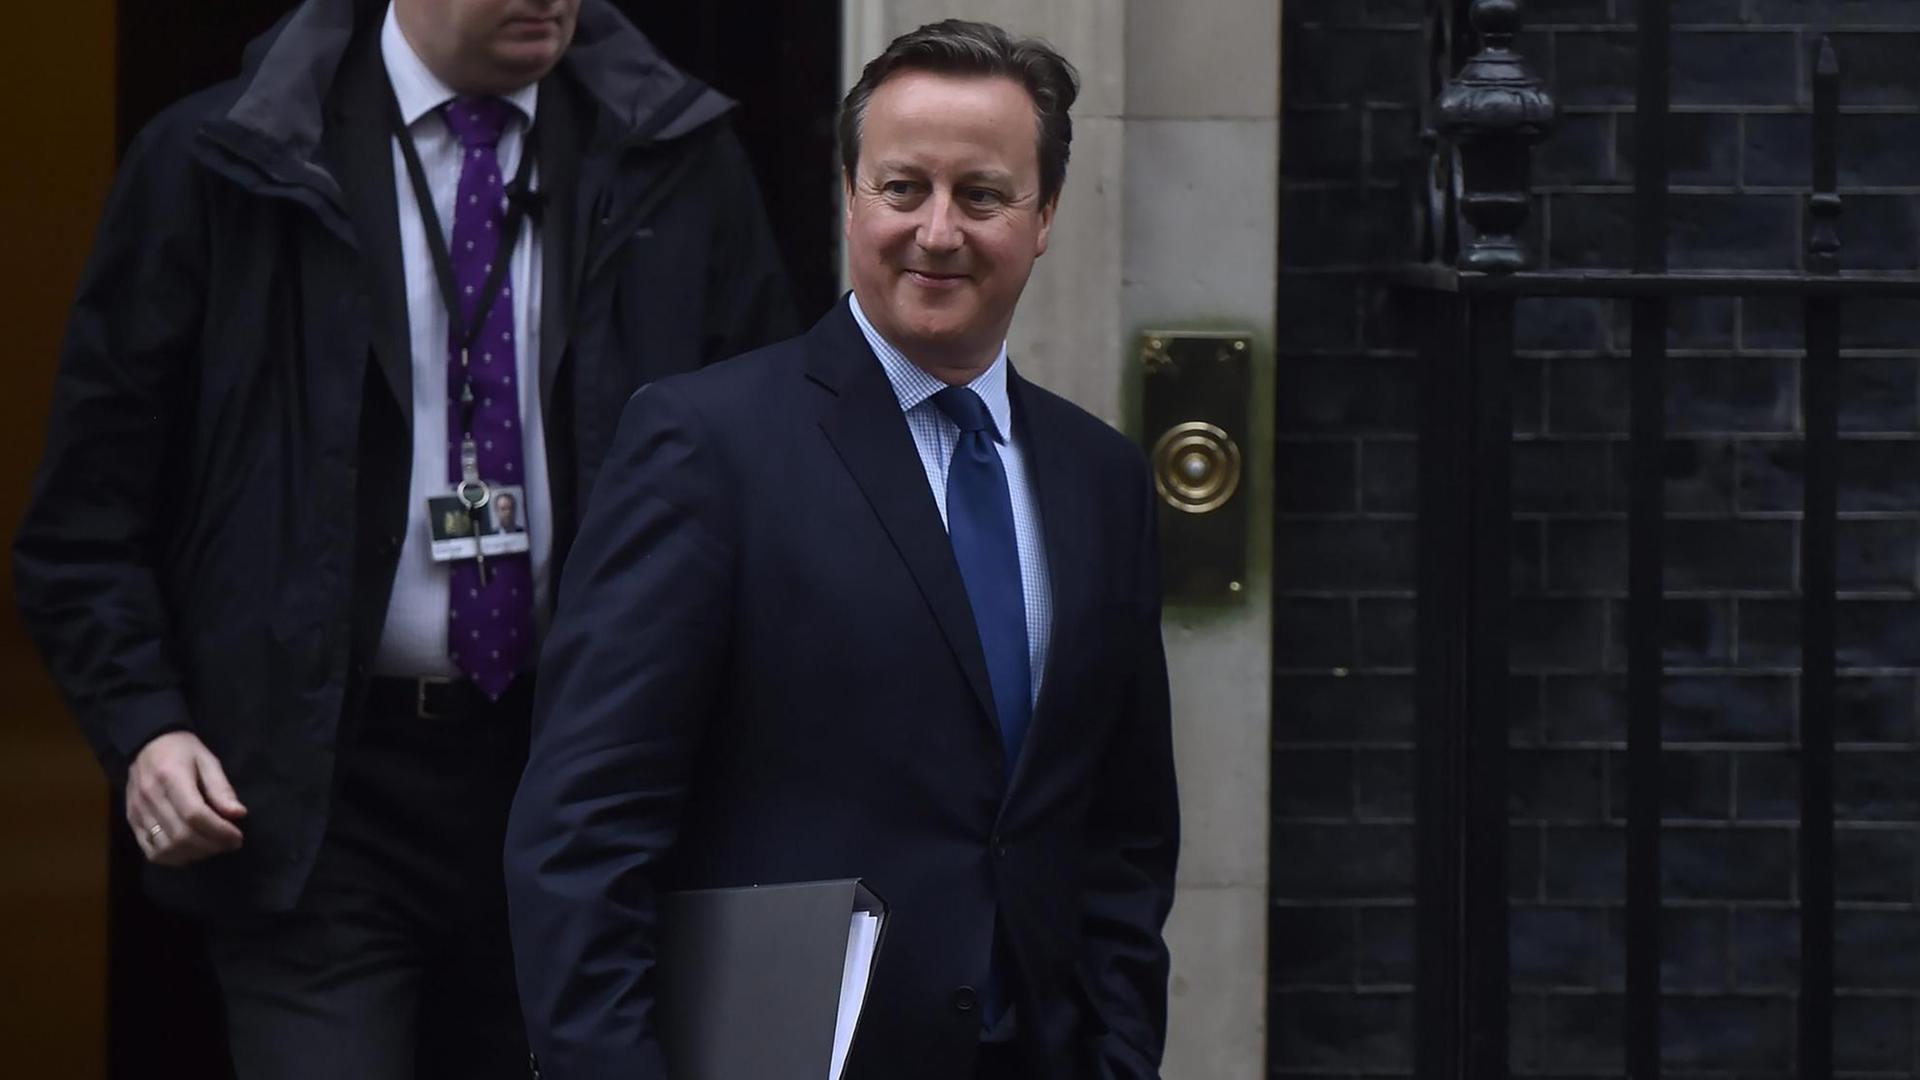 Der britische Premierminister David Cameron verlässt die Downing Street in London.